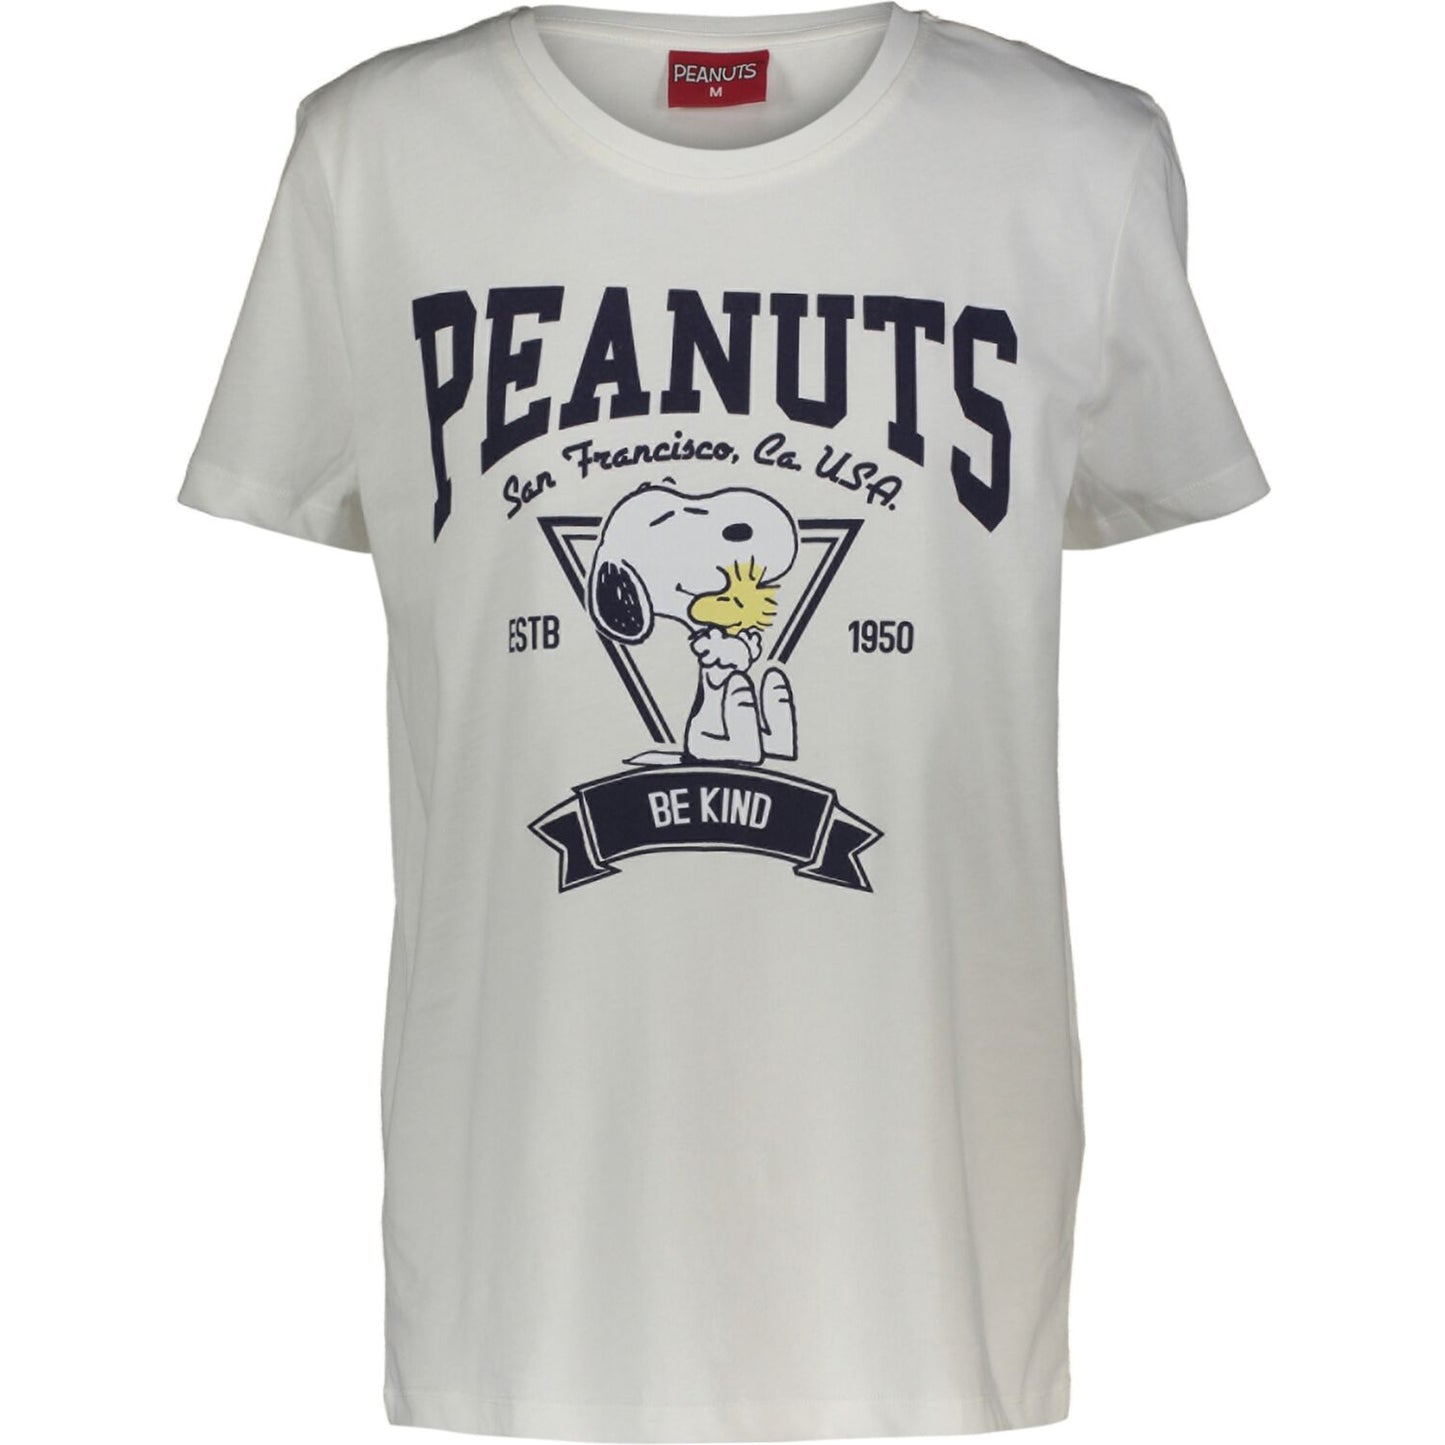 Peanuts - Be Kind T-Shirt